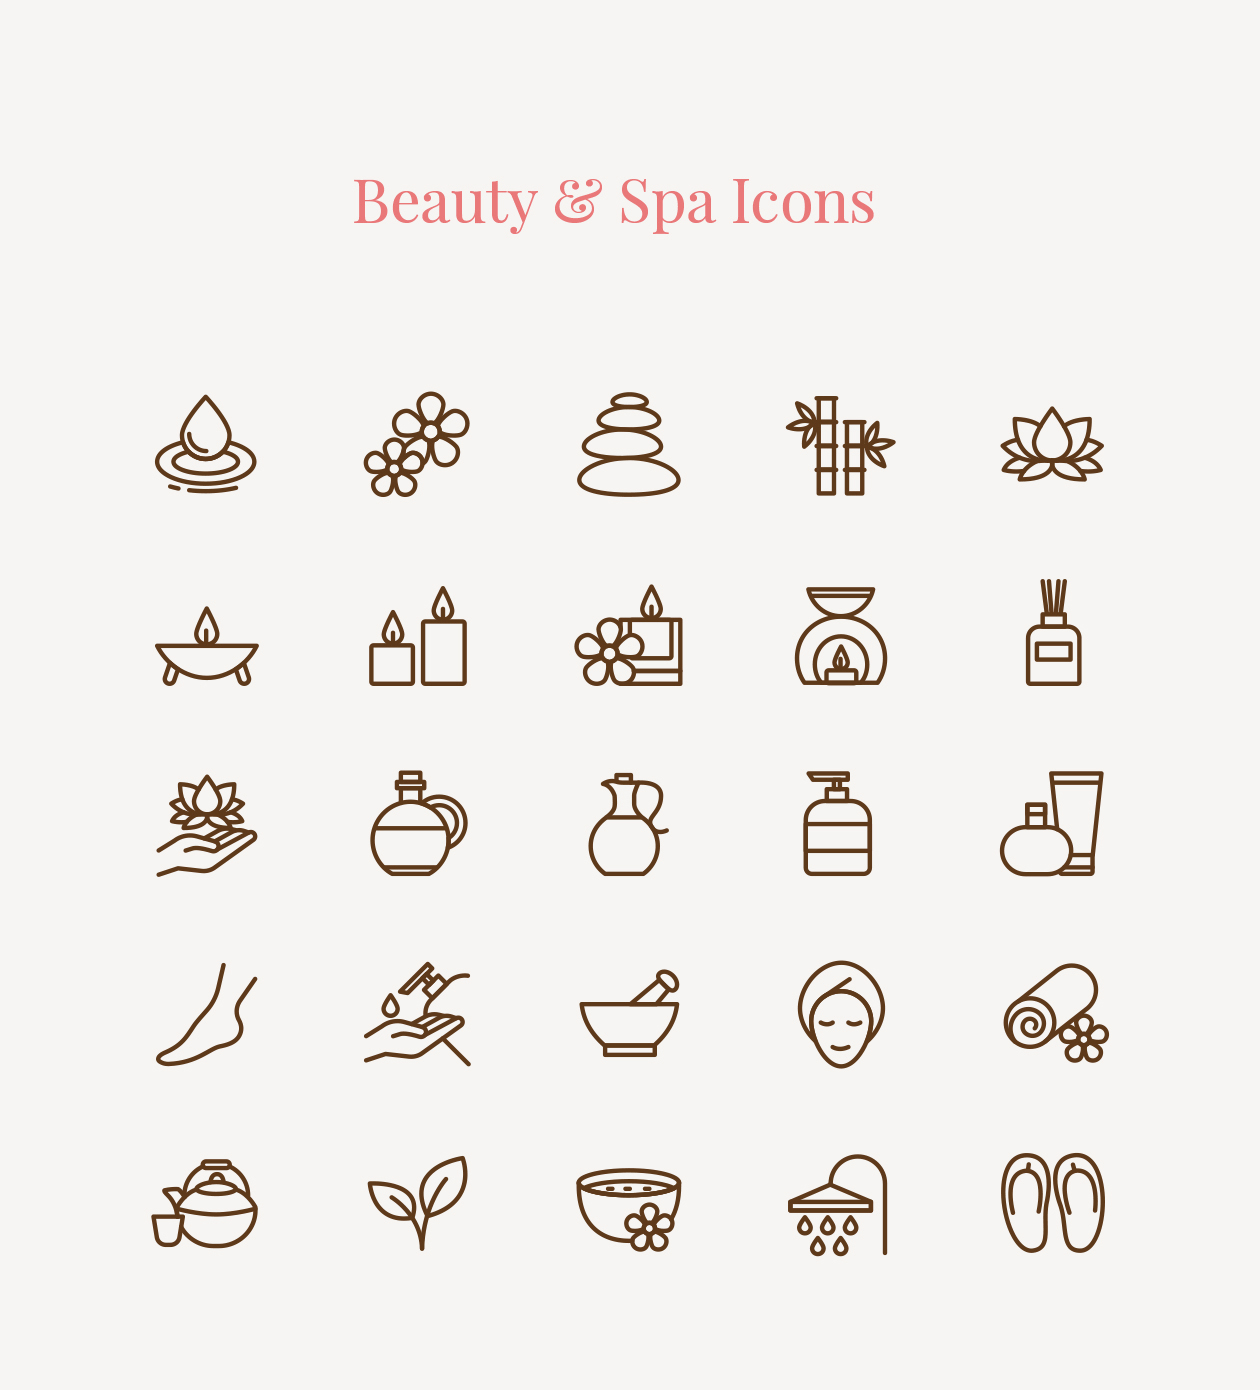 美容护肤SPA主题矢量线性图标素材 Beauty & Spa Icons插图